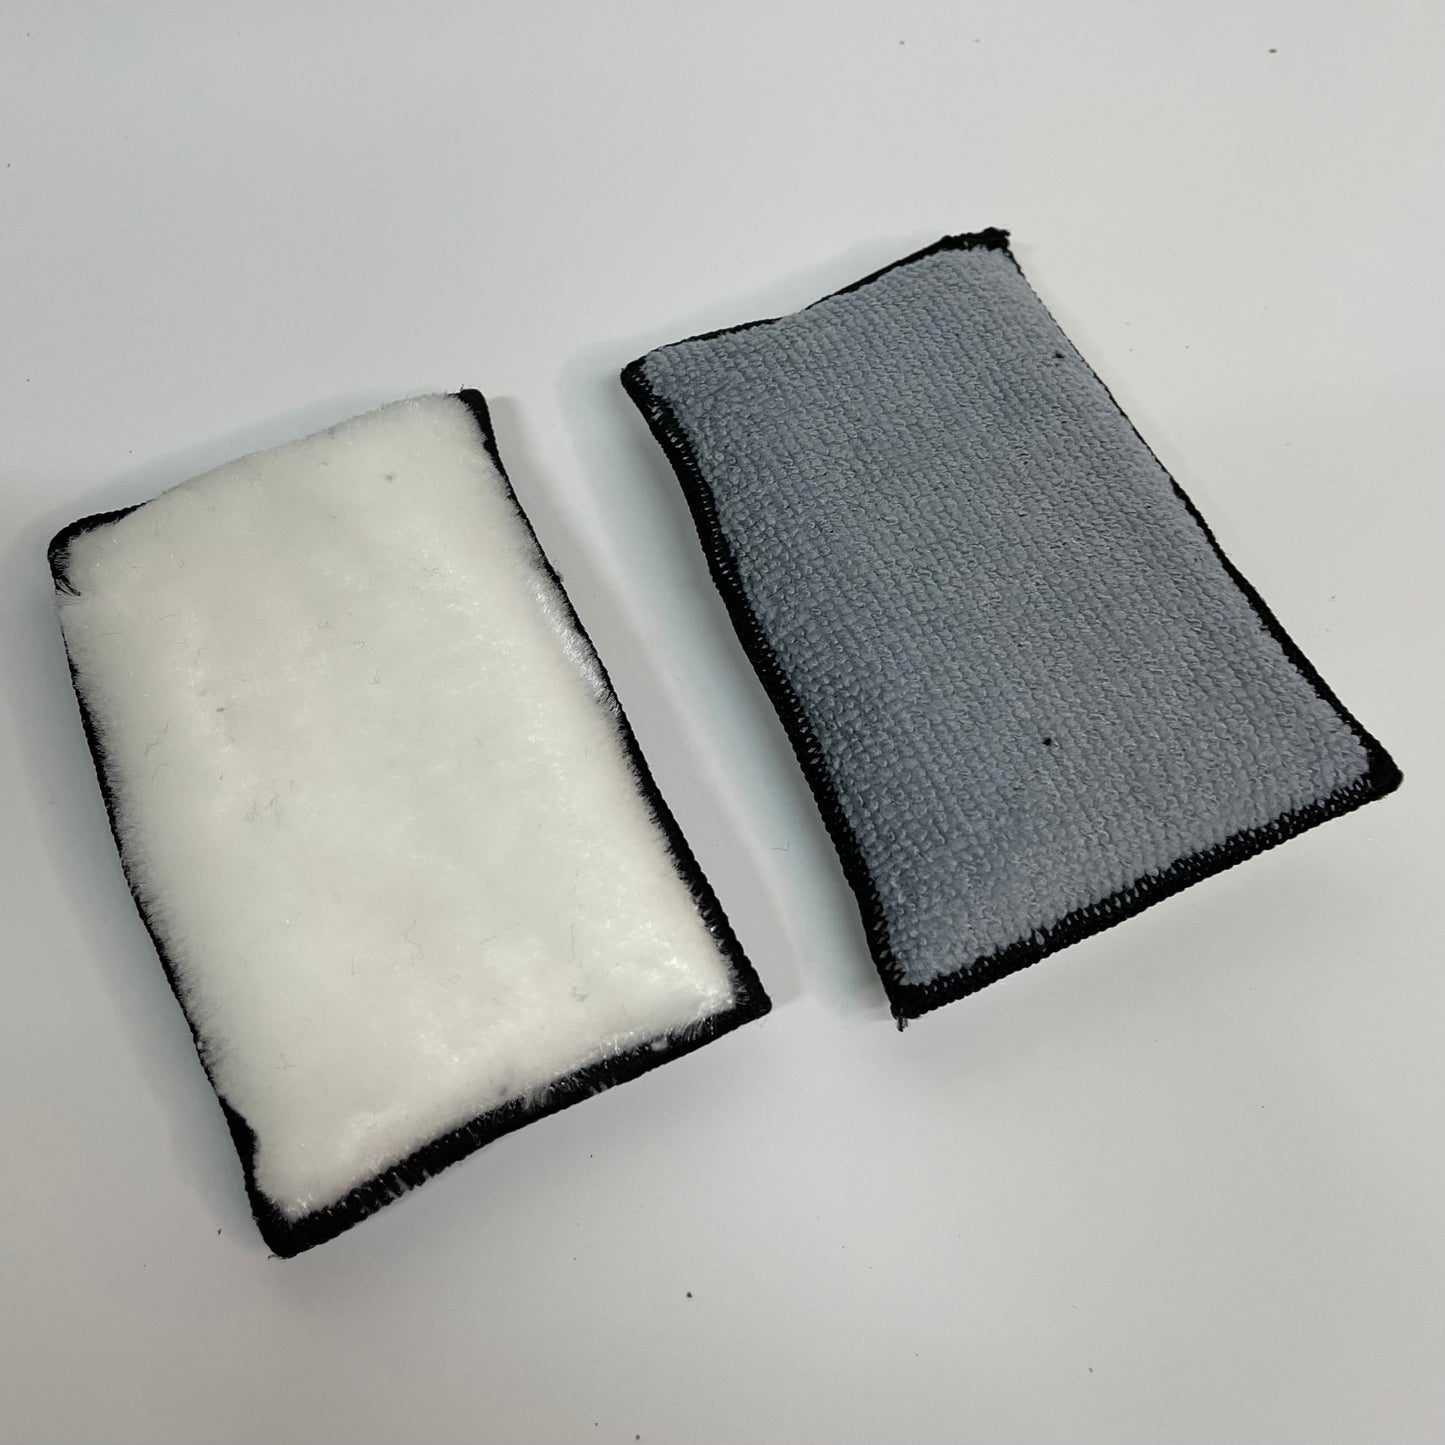 2x Interior scrubbing pads